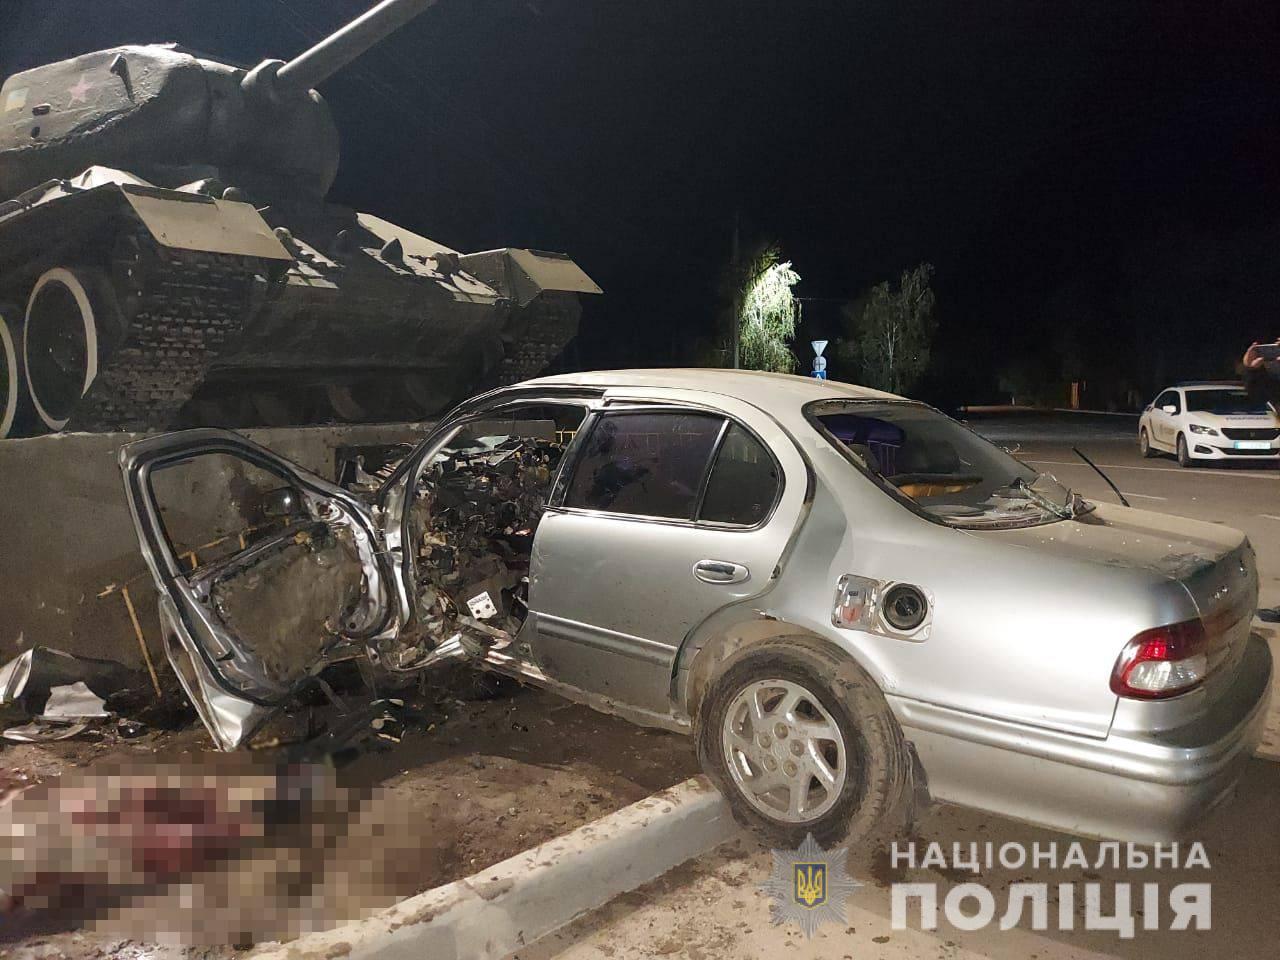  В селе Беляевка водитель легковушки врезался в танк и погиб. Фото пресс-службы Национальной полиции